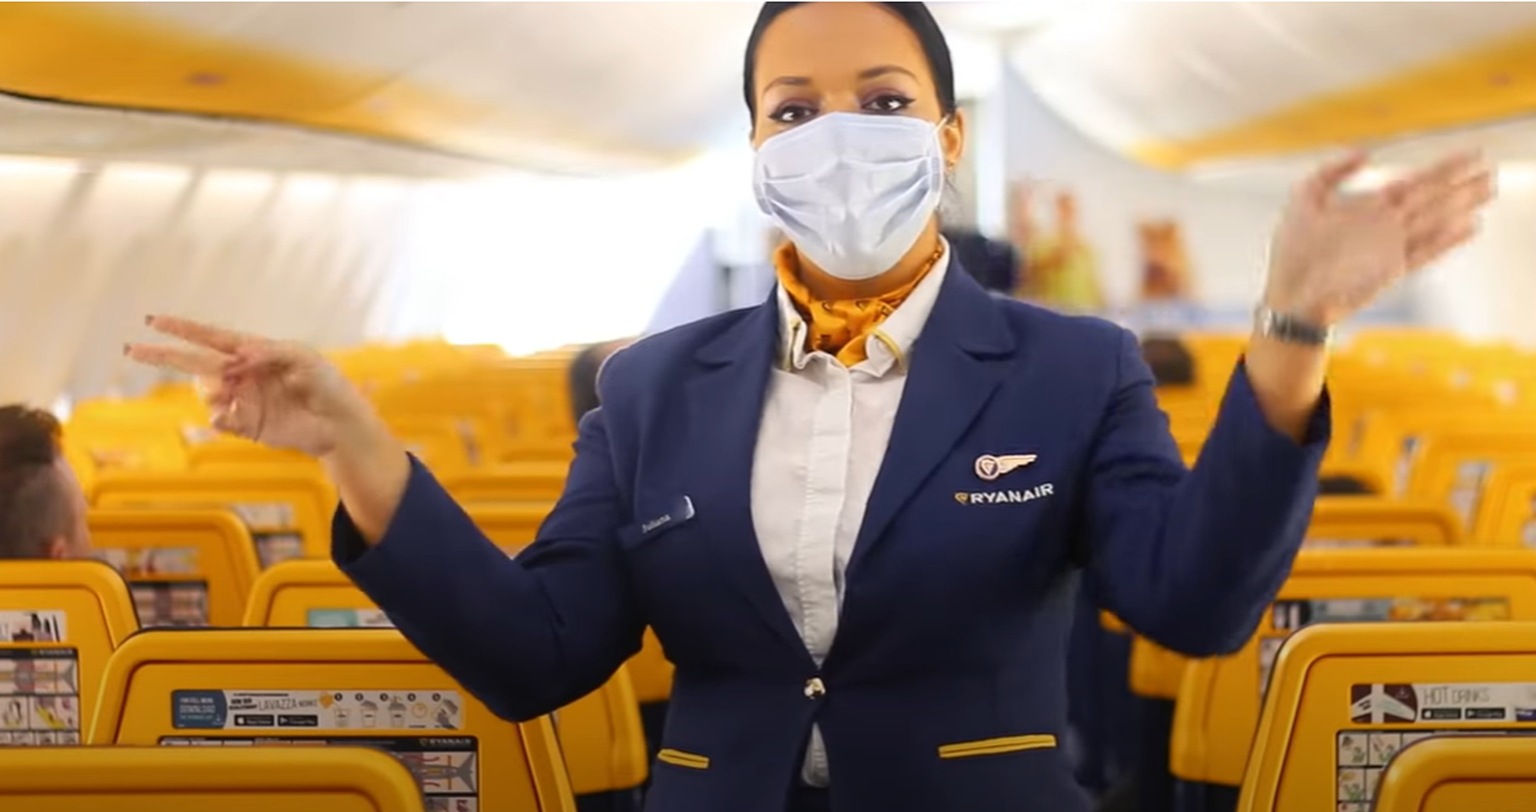 Nicht nur die Flugbegleiterinnen, sondern auch die Passagiere müssen bei Ryanair künftig Masken tragen.